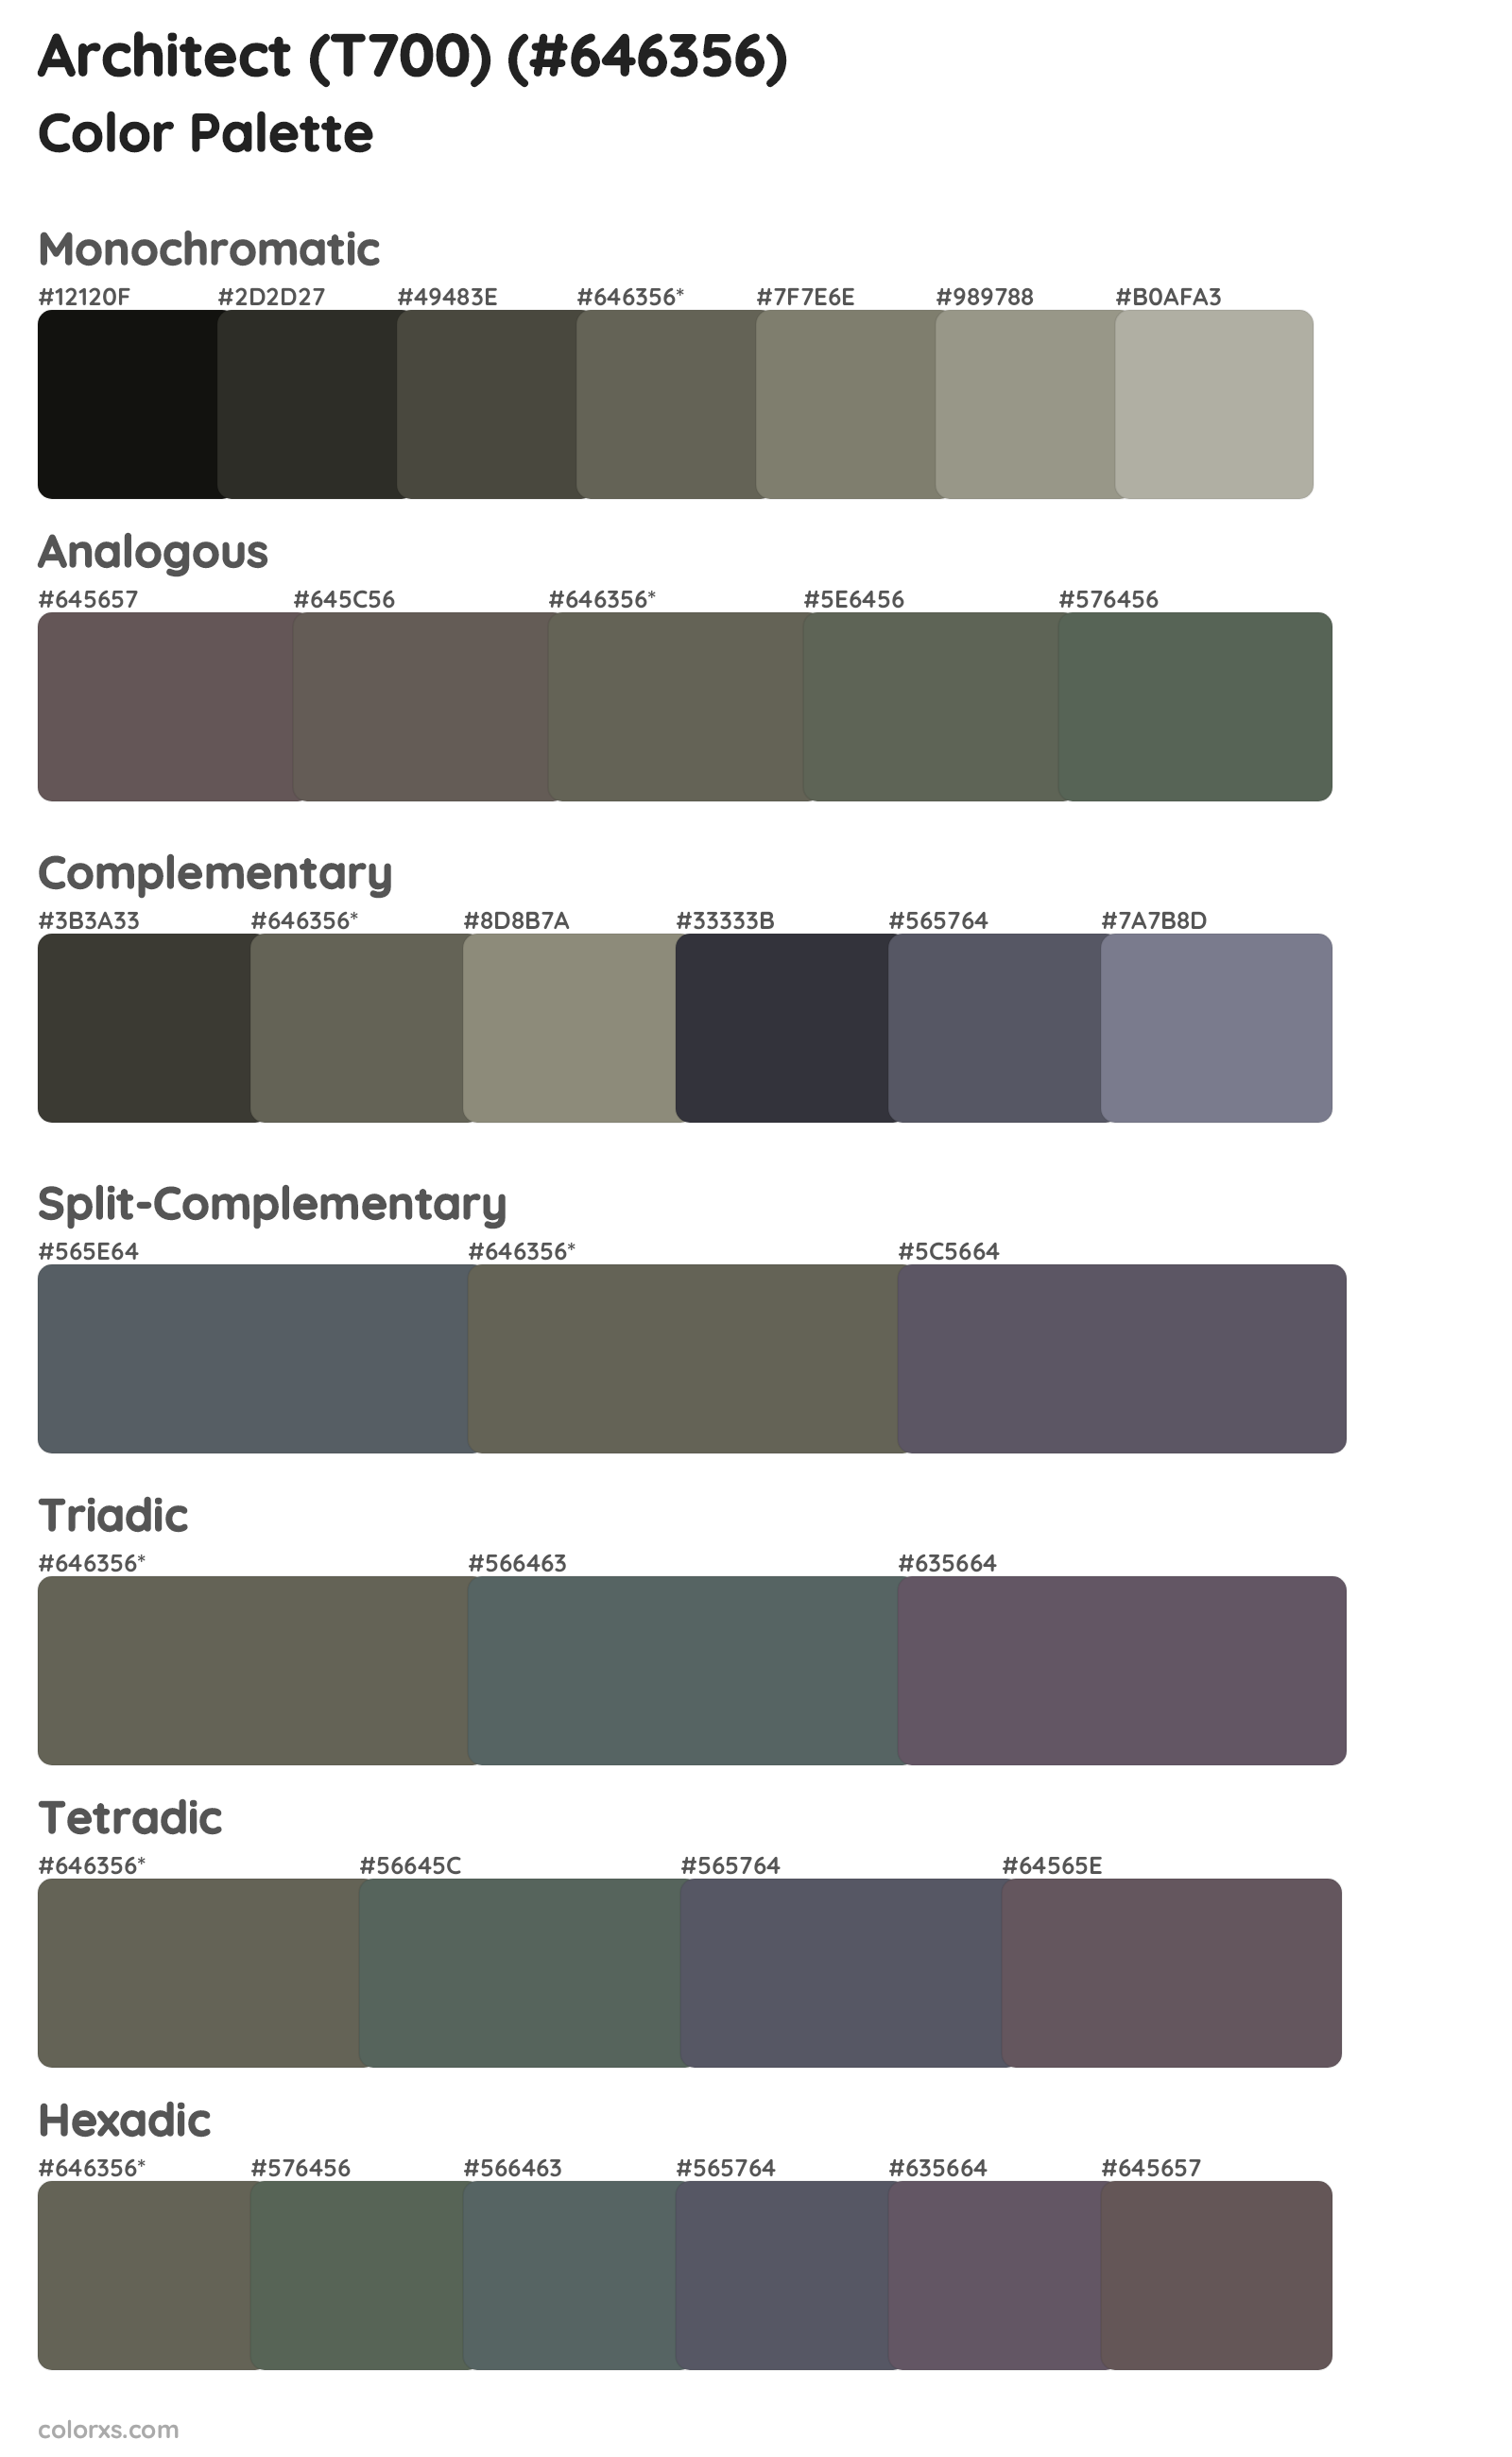 Architect (T700) Color Scheme Palettes